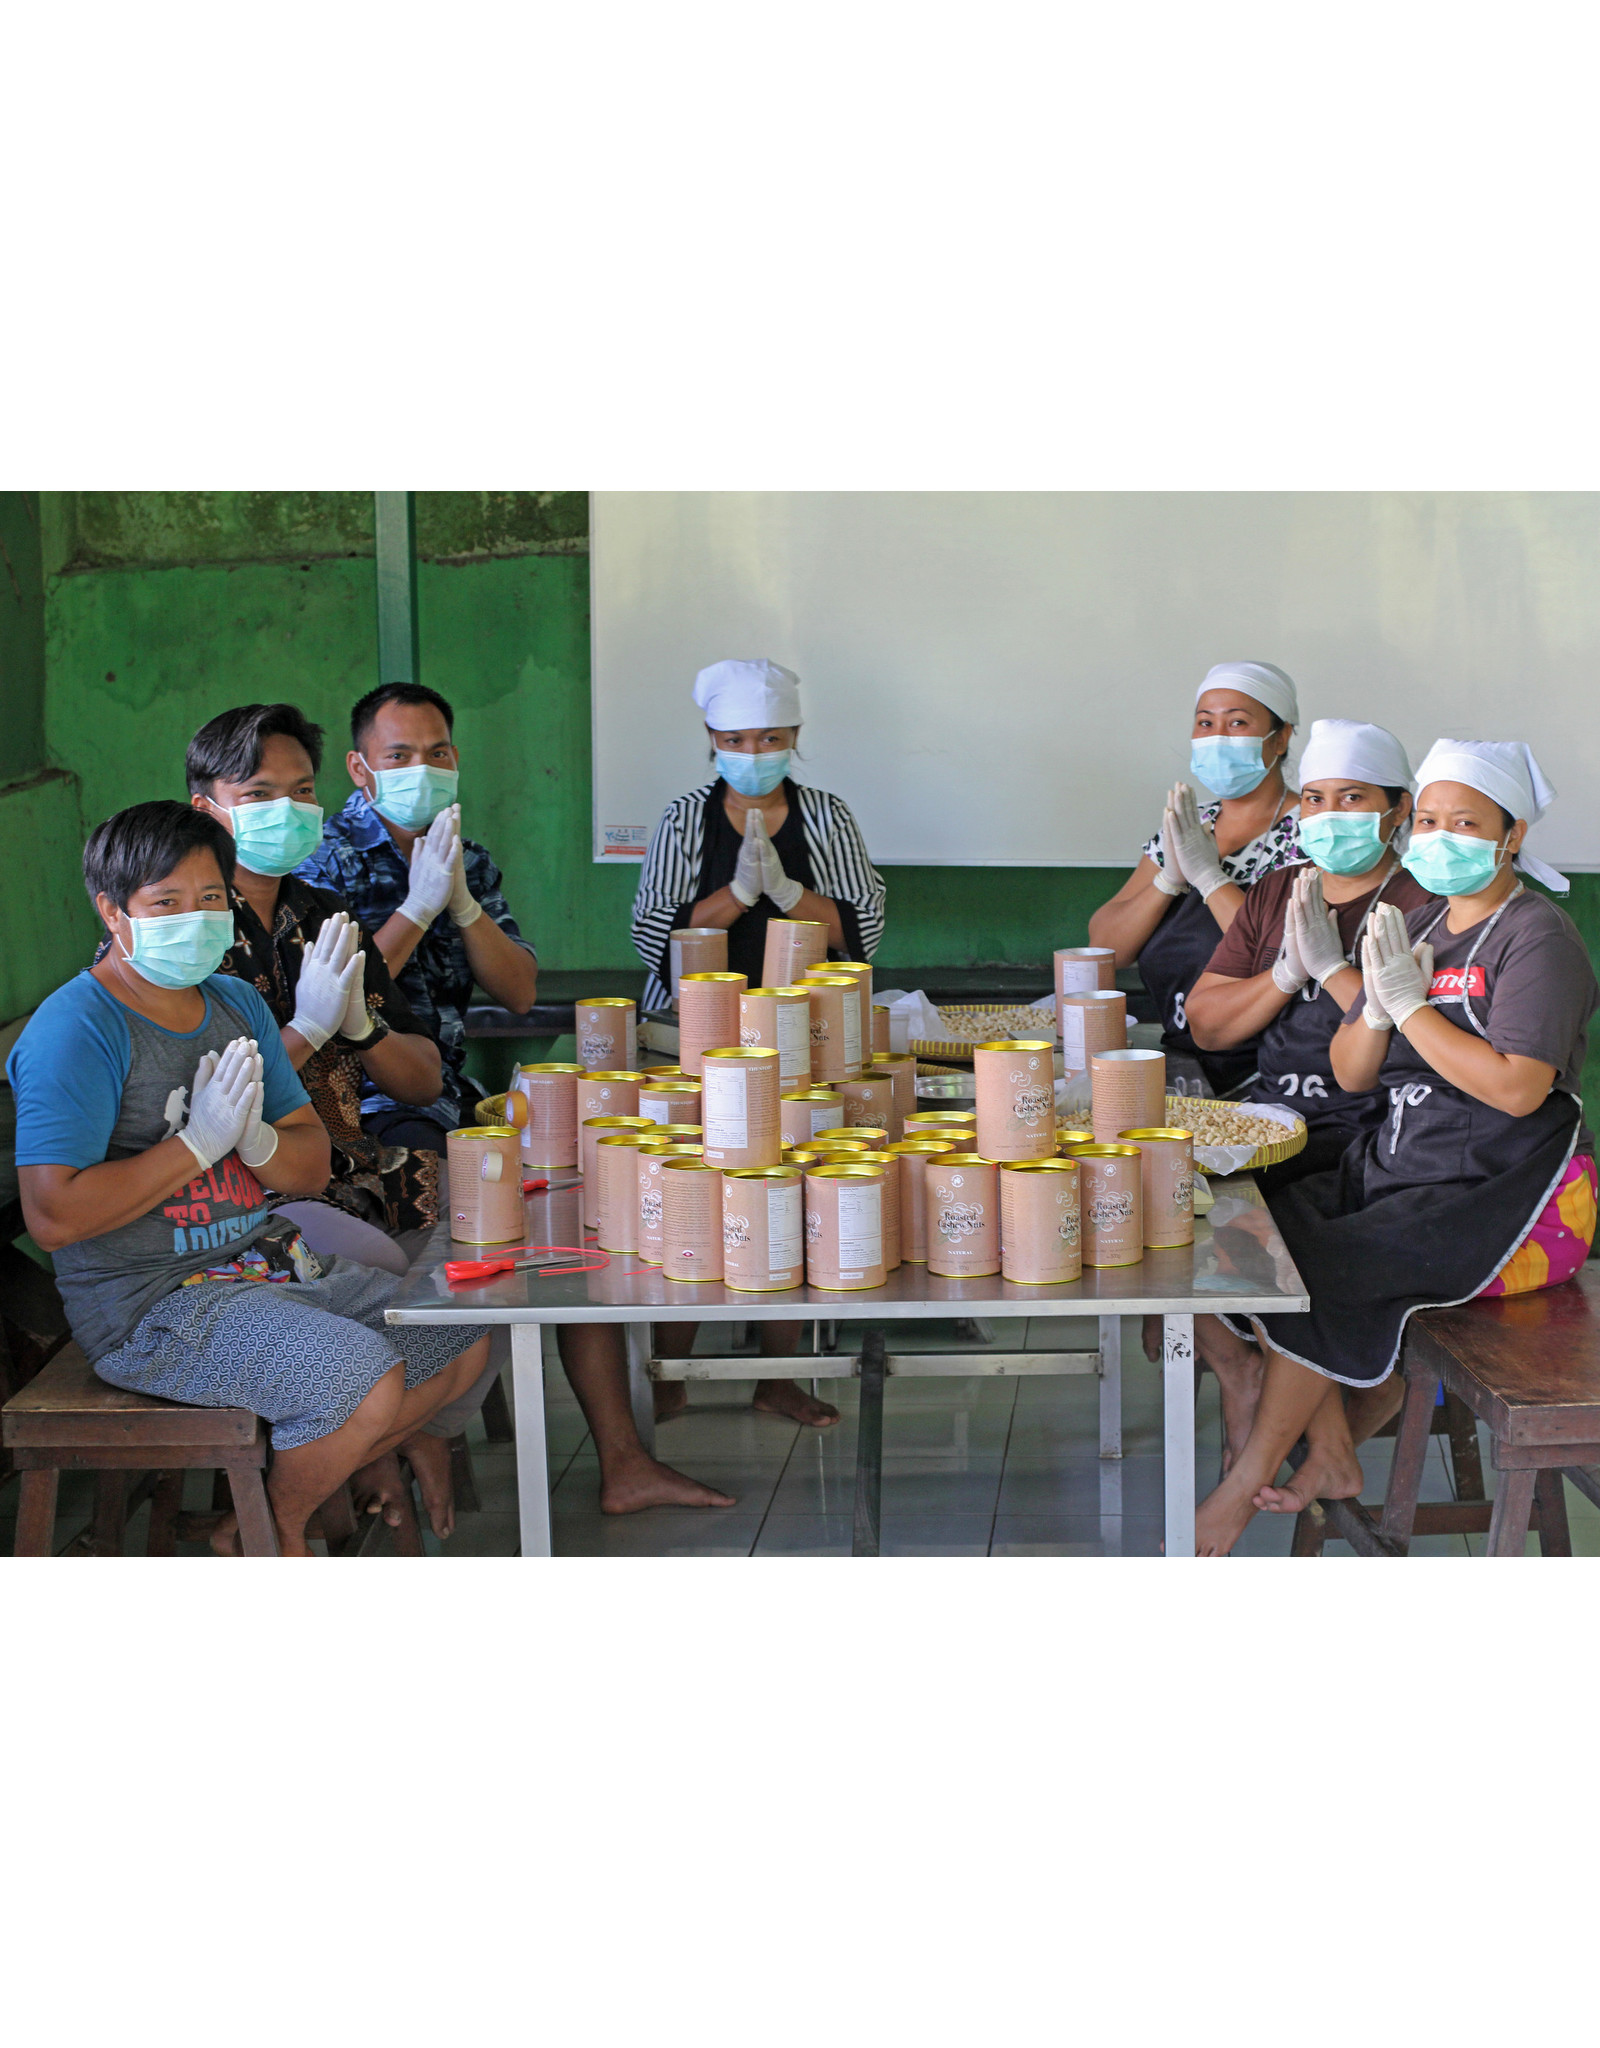 Muntigunung - Zukunft für Kinder Cashew Thay Herbal Mix 500 gr. Bali